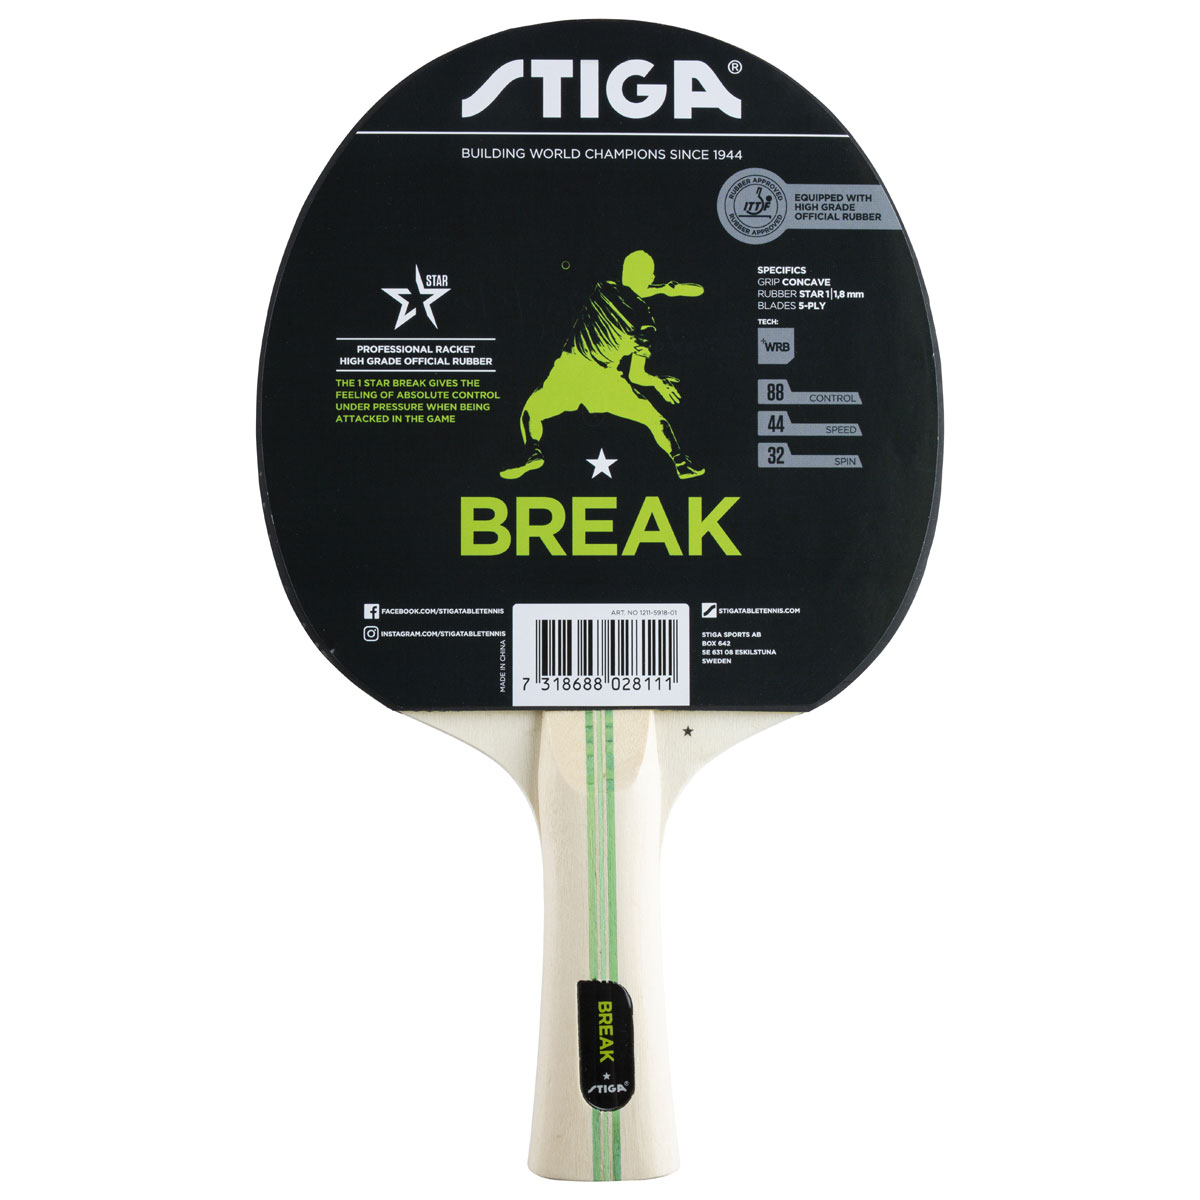 Break WRB 1* (concave) galda tenisa rakete